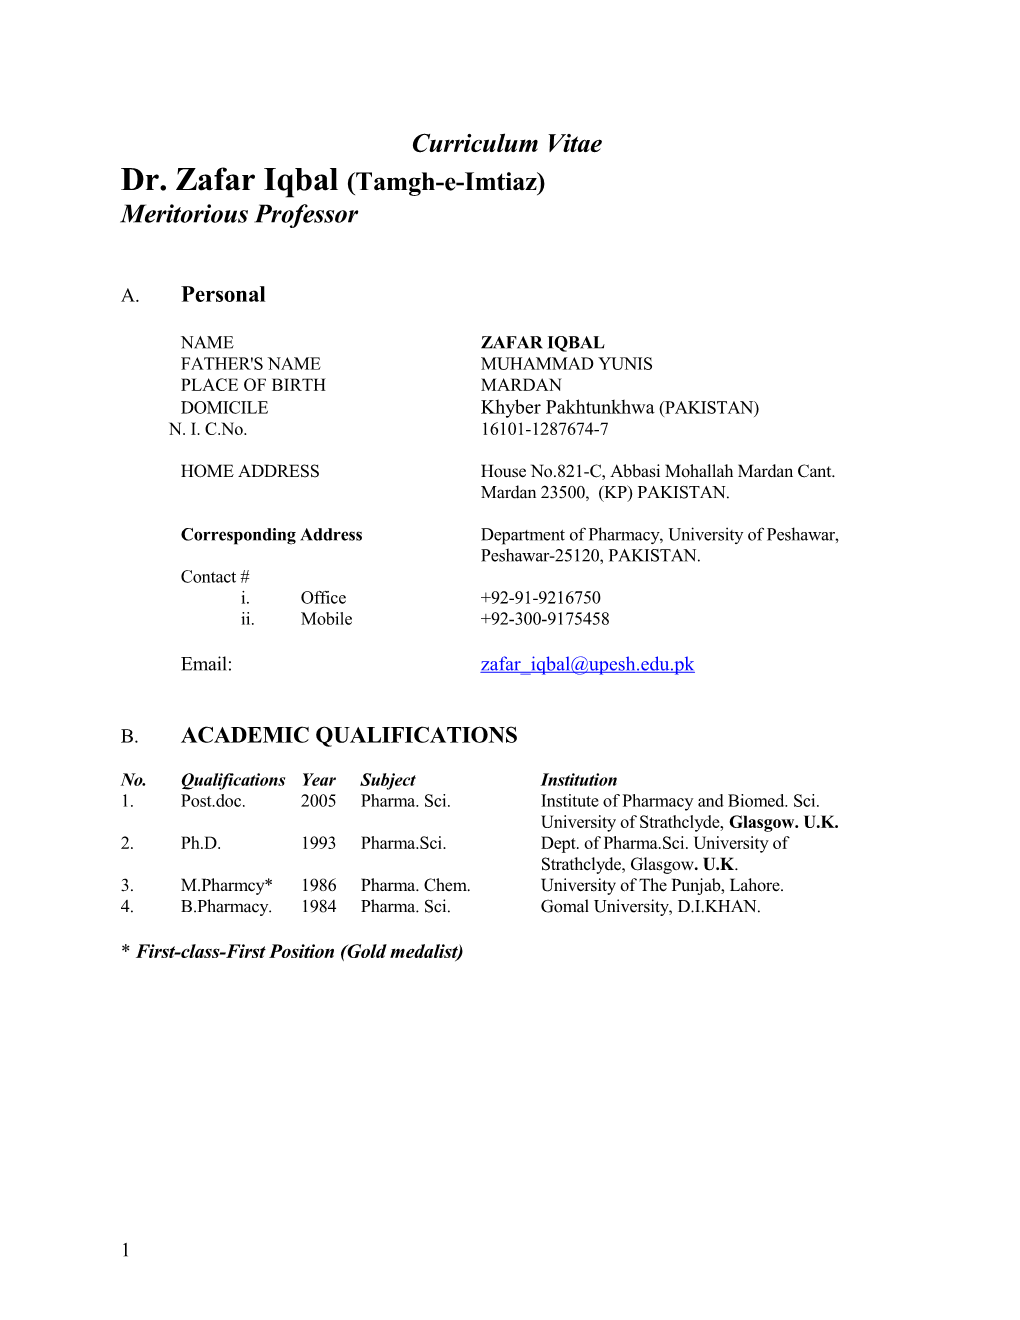 Dr. Zafar Iqbal(Tamgh-E-Imtiaz)